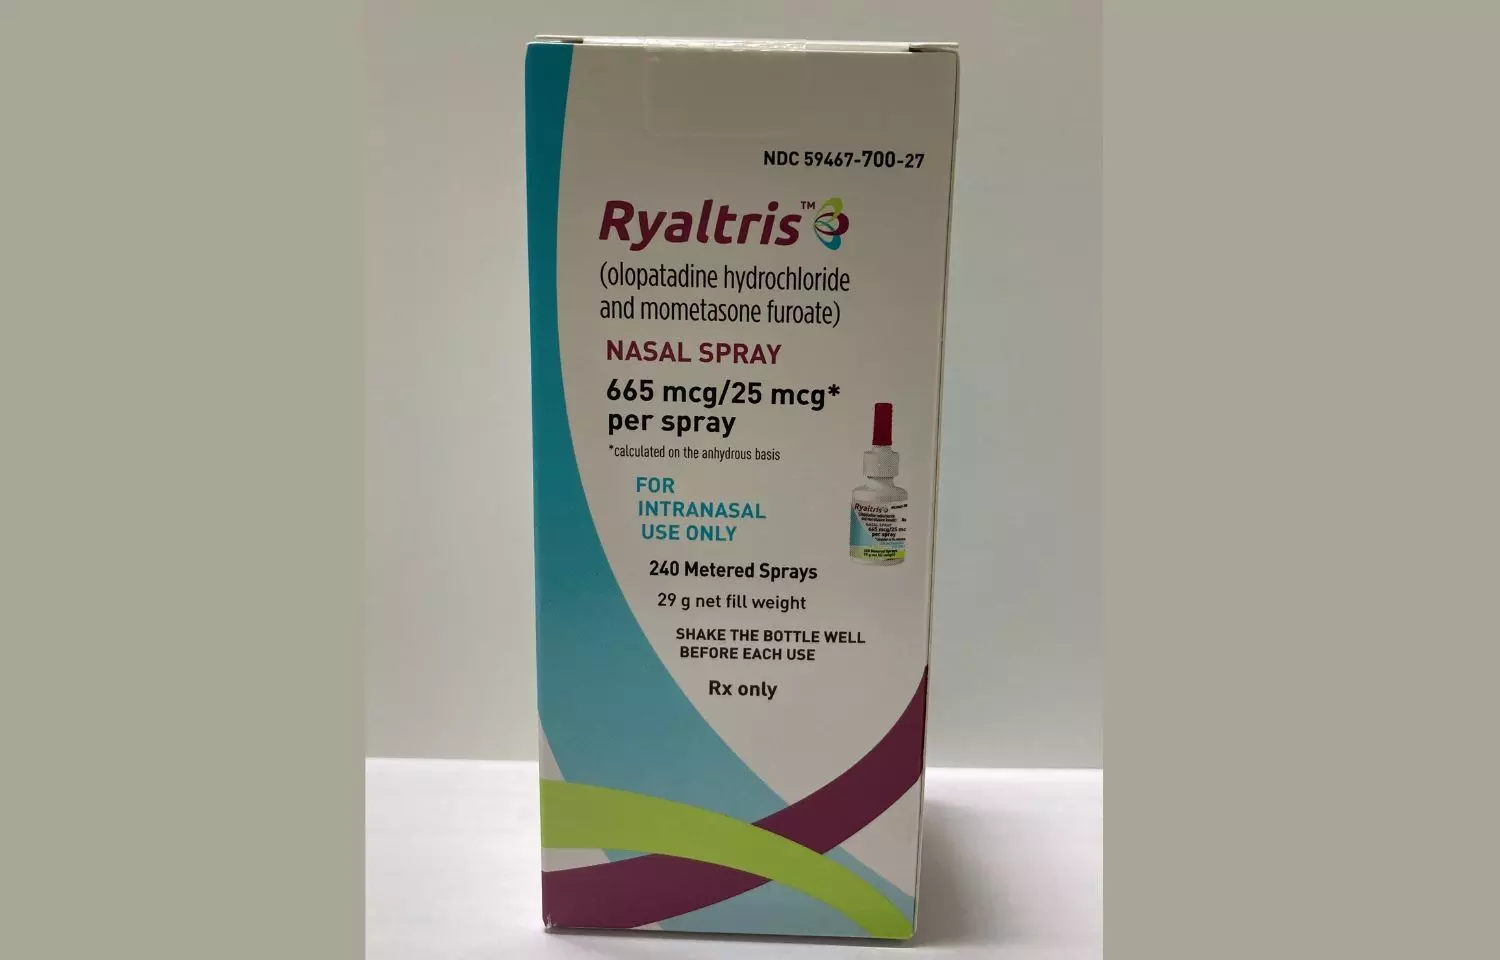 Glenmark Specialty, Hikma Pharma launch seasonal allergic rhinitis nasal spray RYALTRIS in US